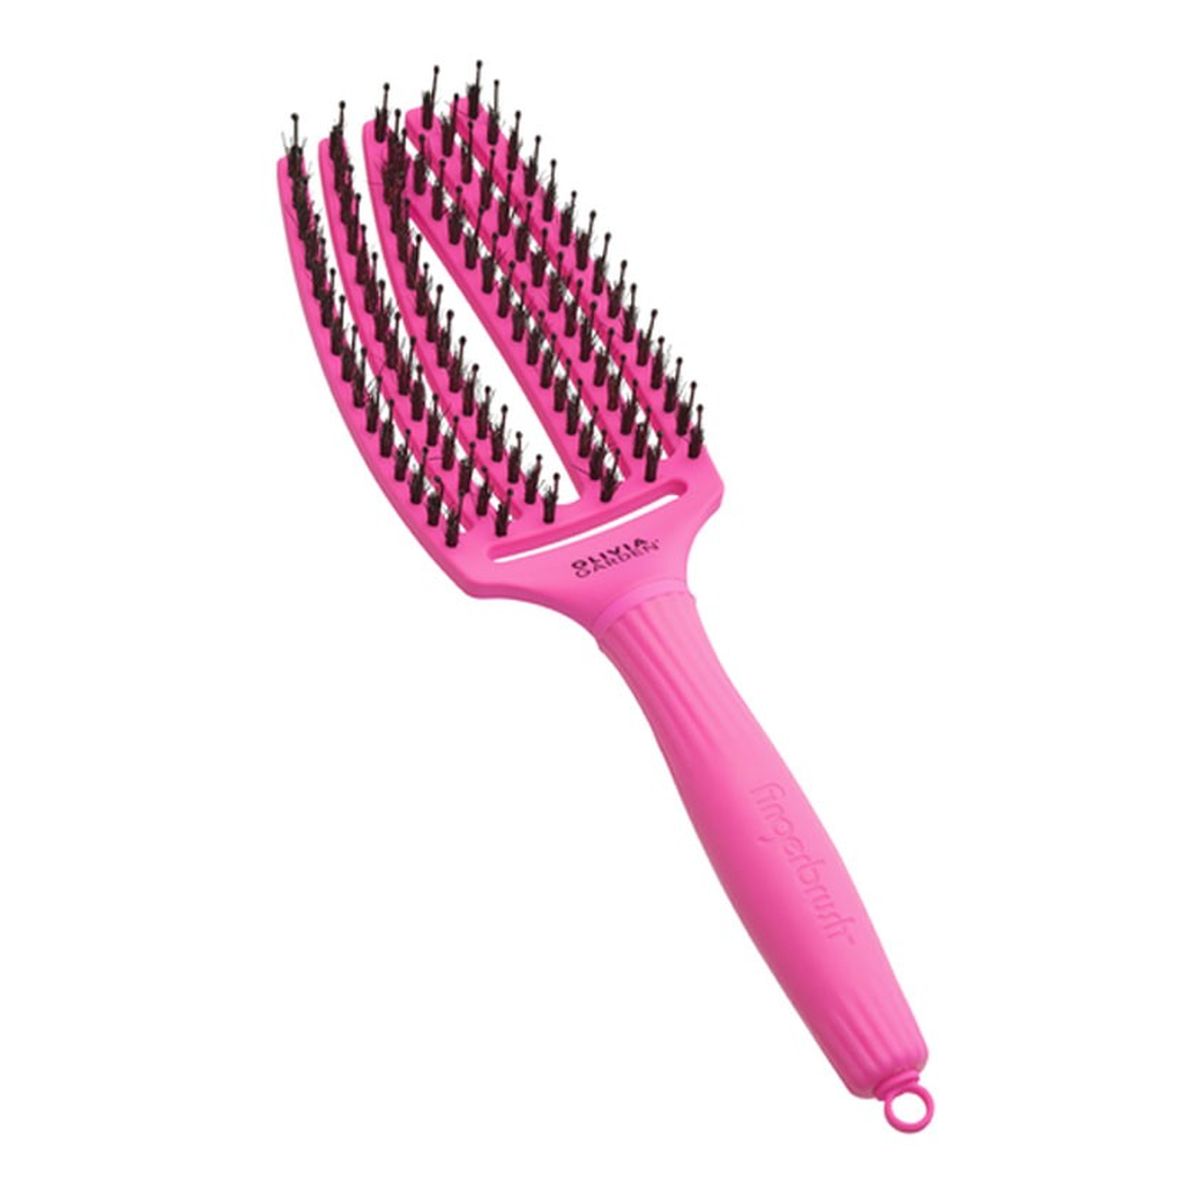 Olivia Garden Finger Brush Szczotka do włosów Neon Purple